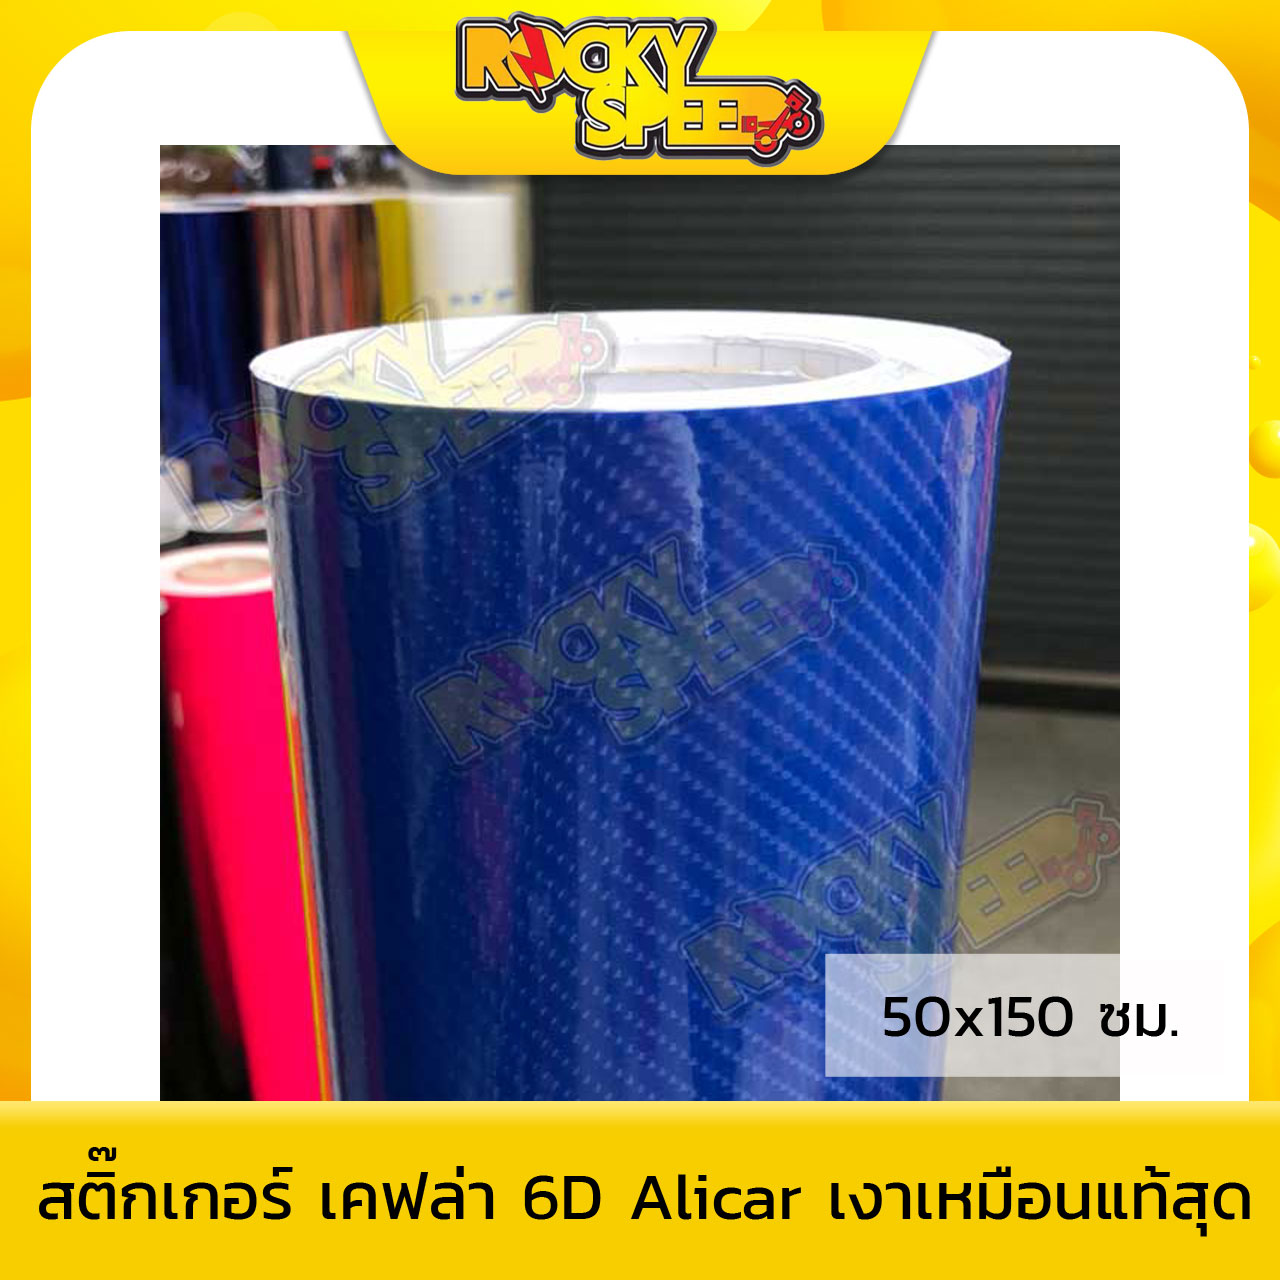 สติ๊กเกอร์เคฟล่า 6D หลังตาราง Alicar สีน้ำเงิน (50x150ซม.)